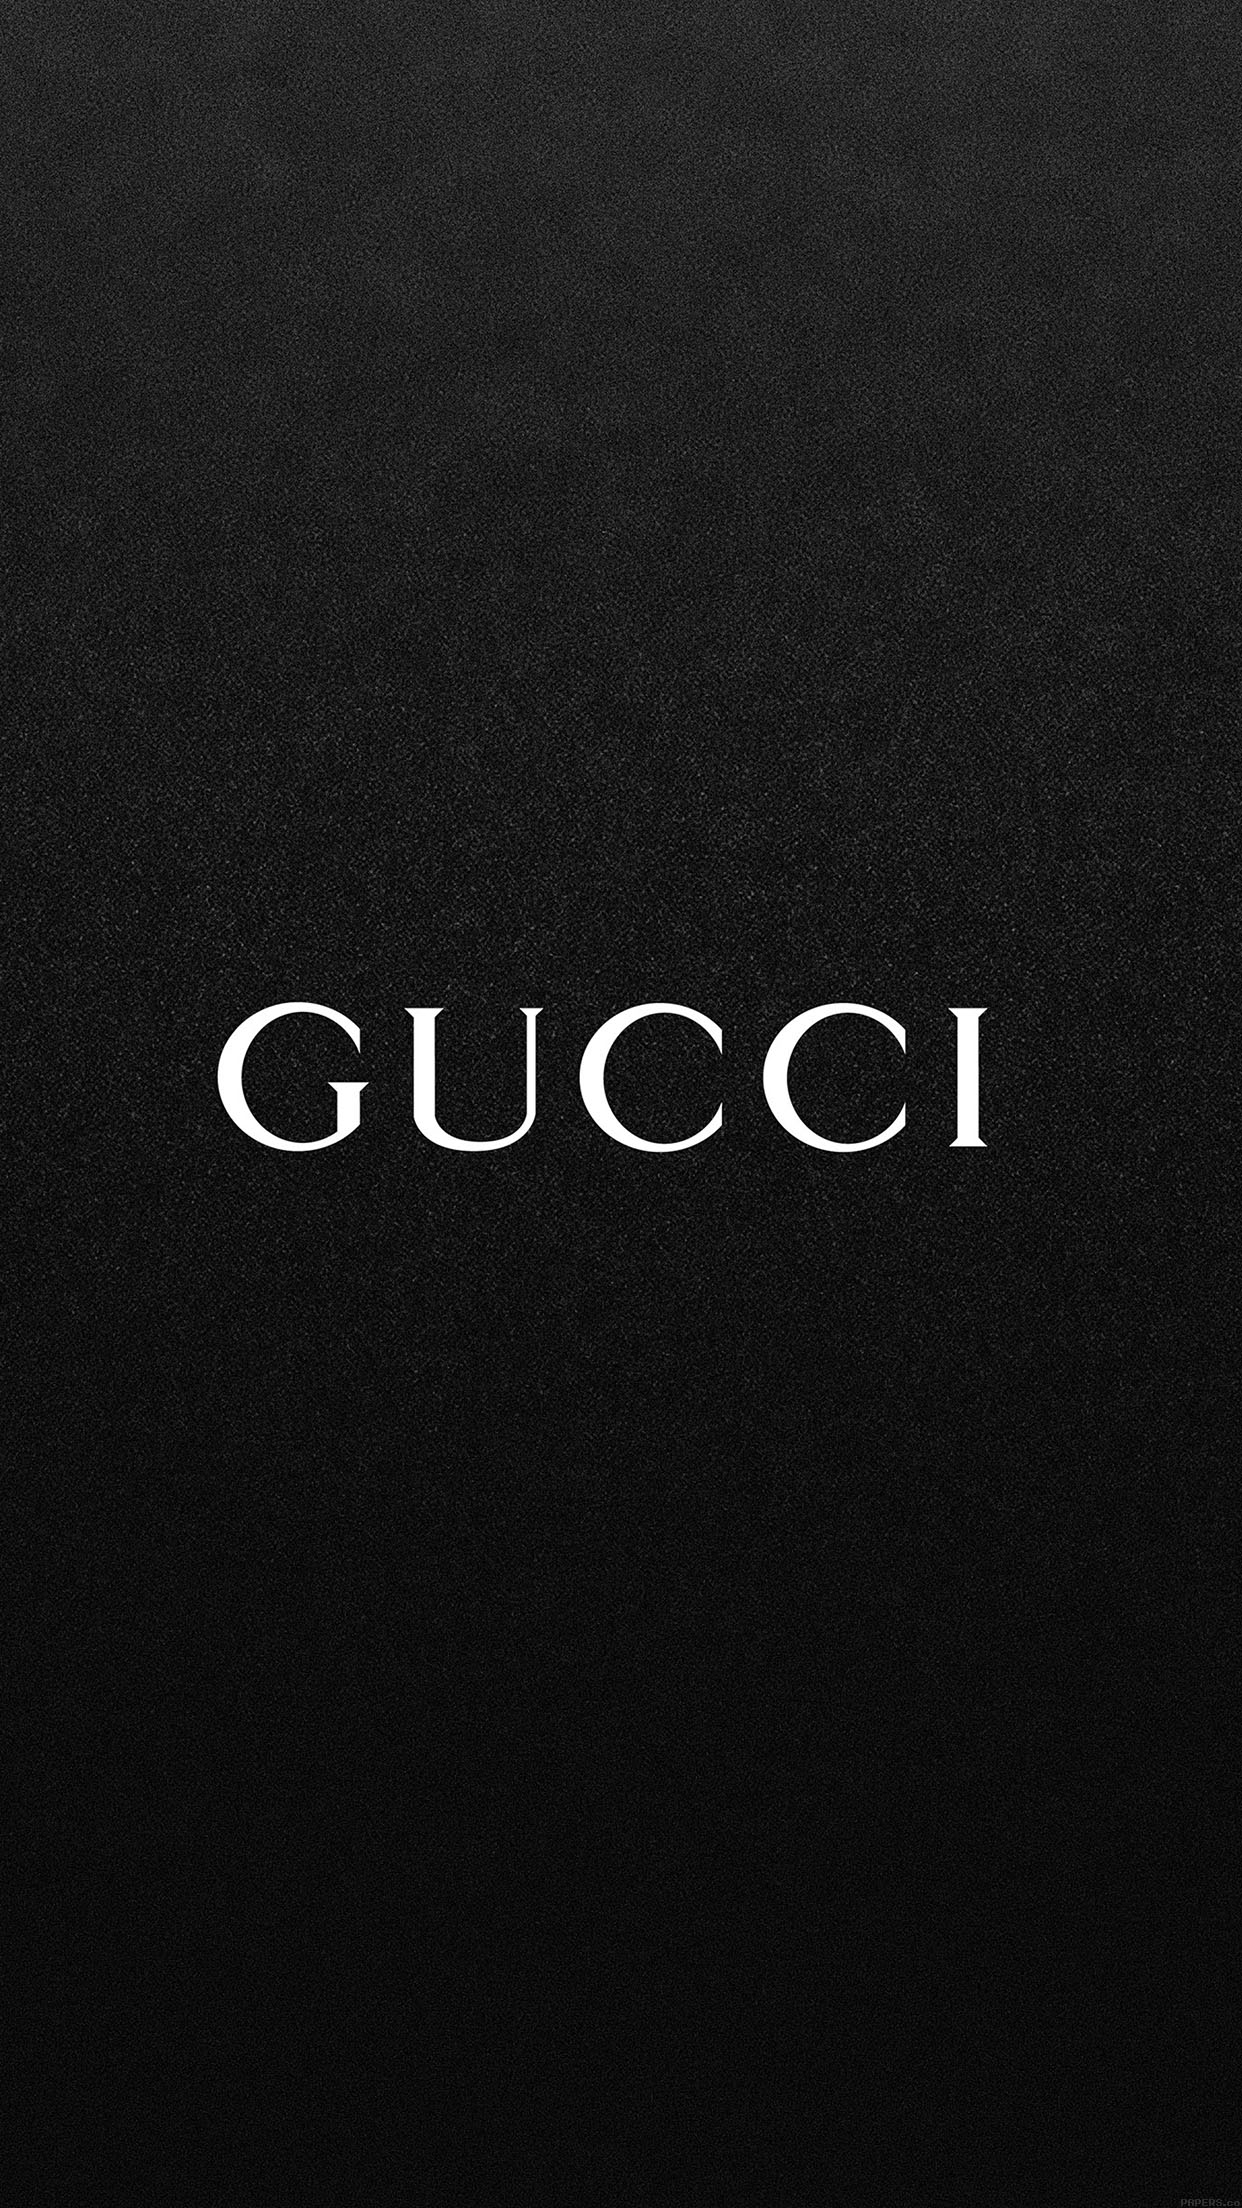 Gucci và biểu tượng thương hiệu thời trang đẳng cấp